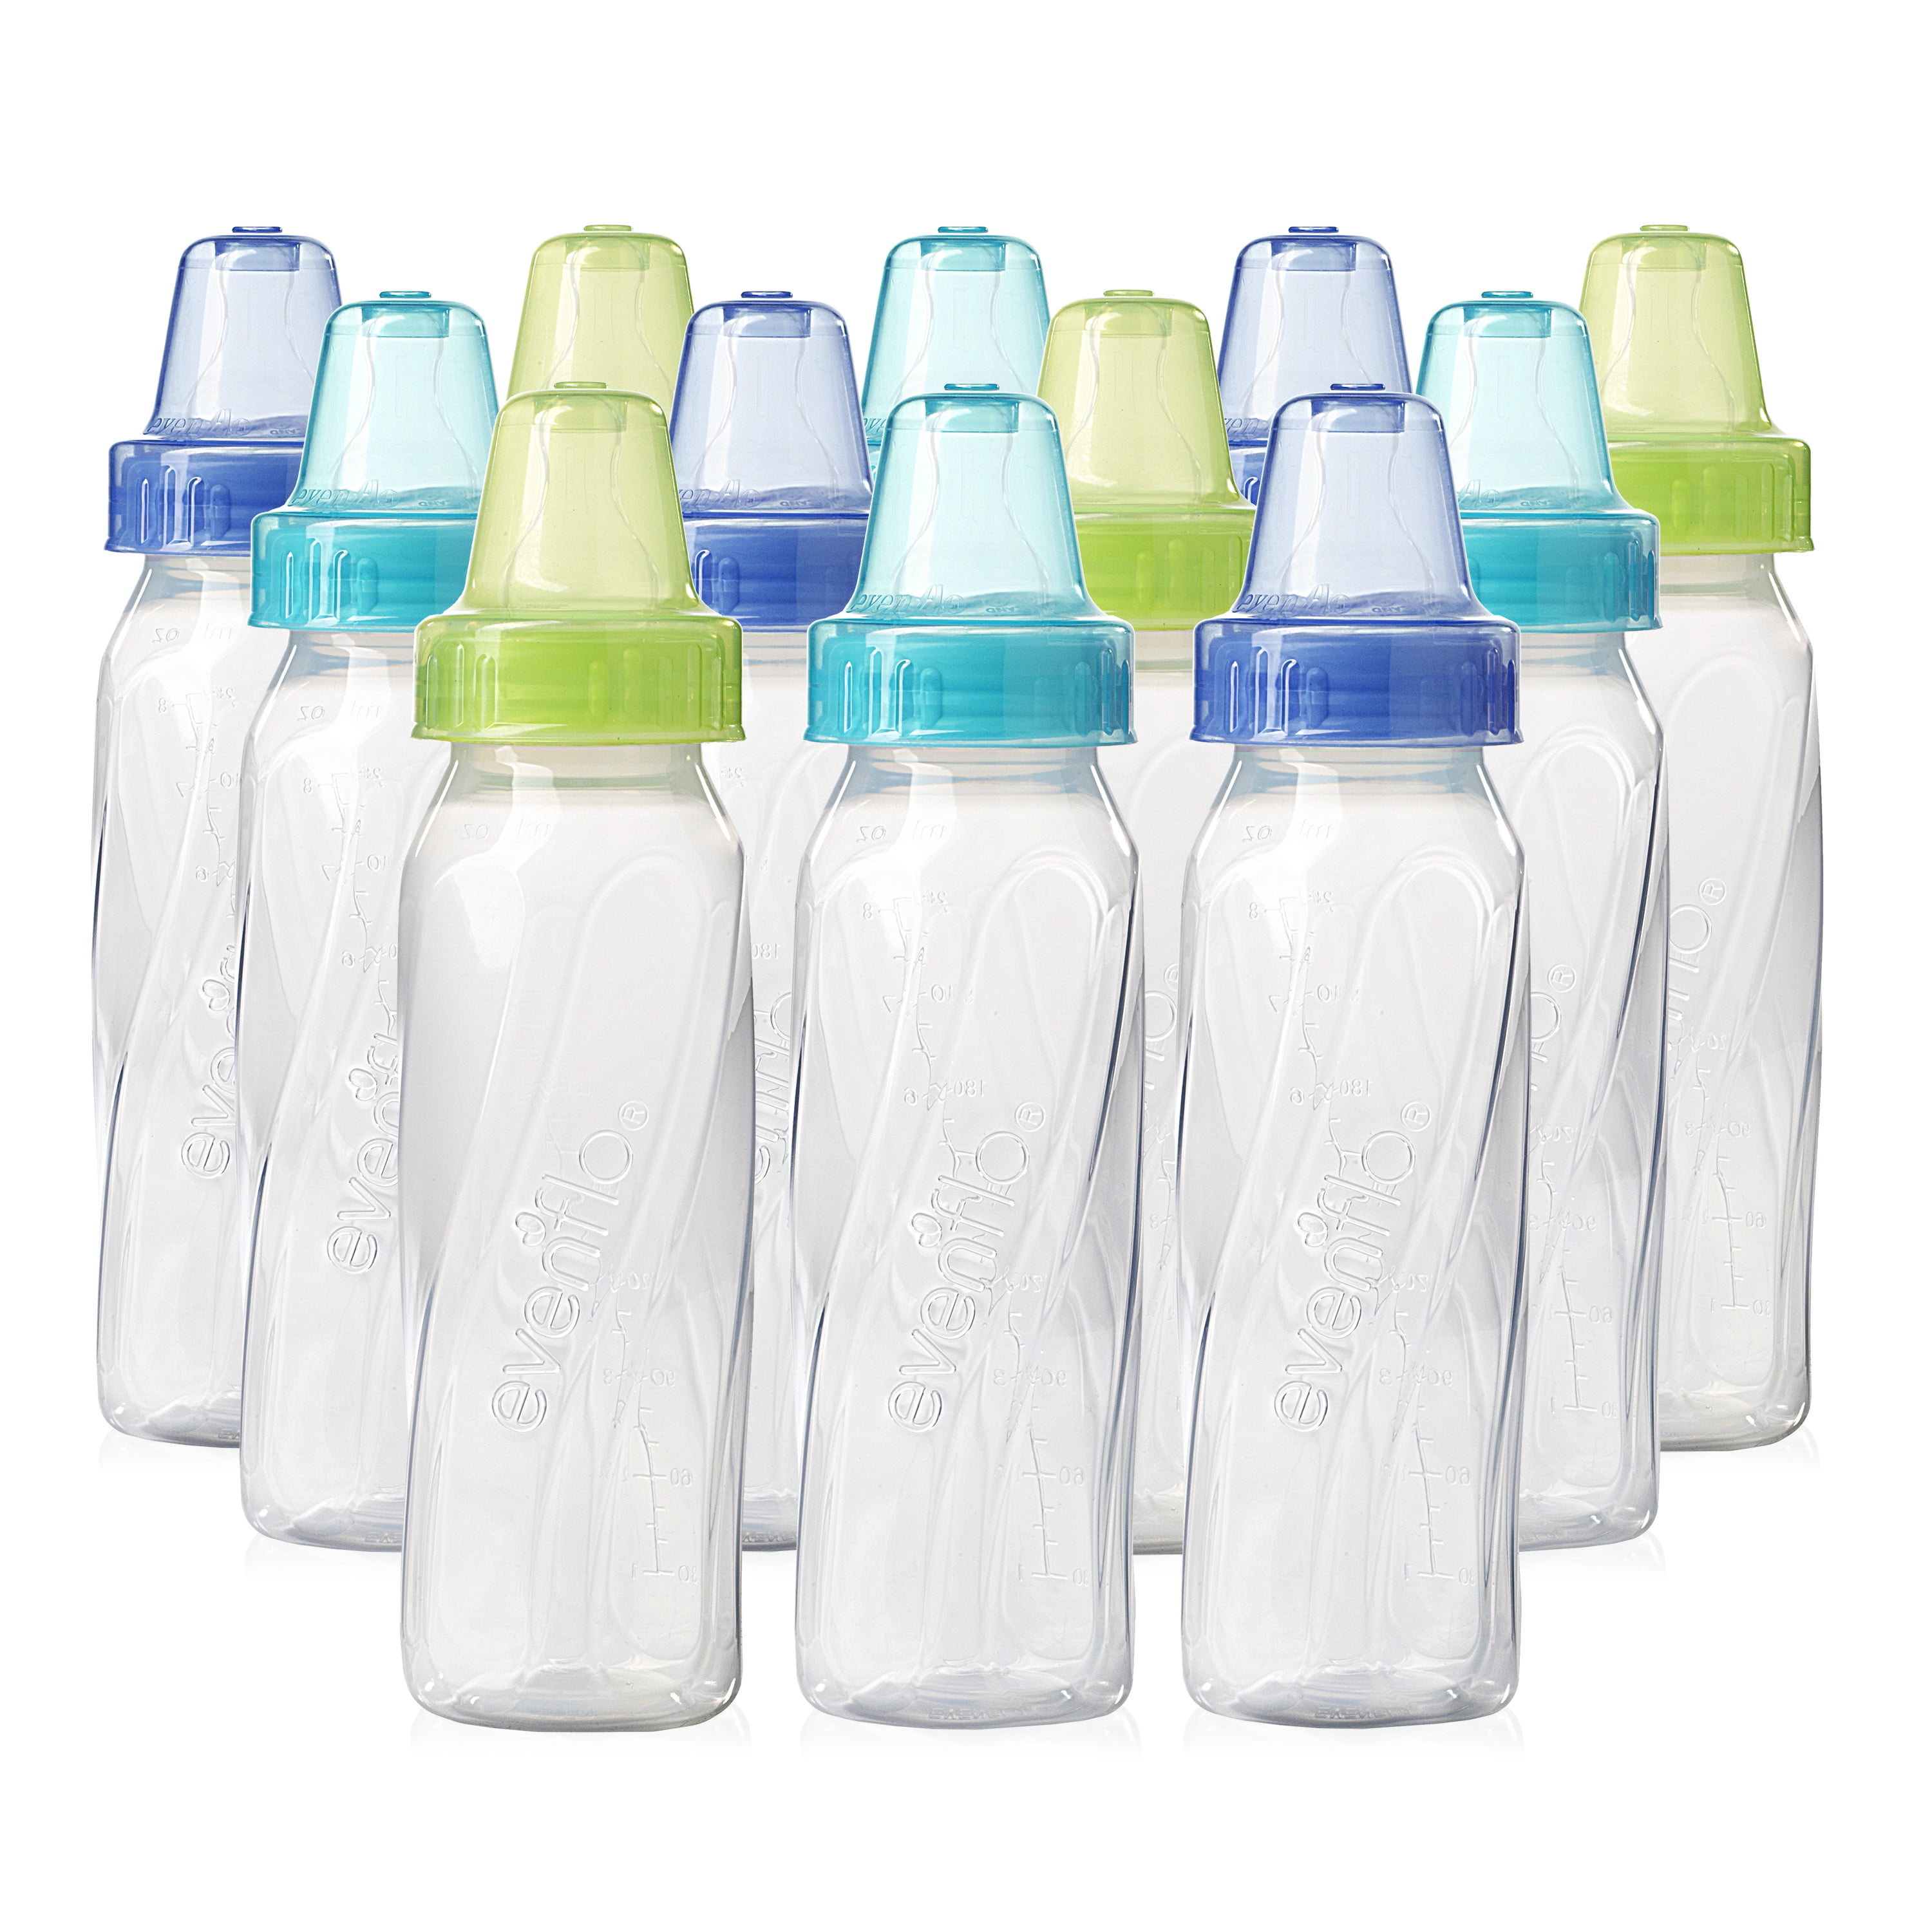 free baby bottles